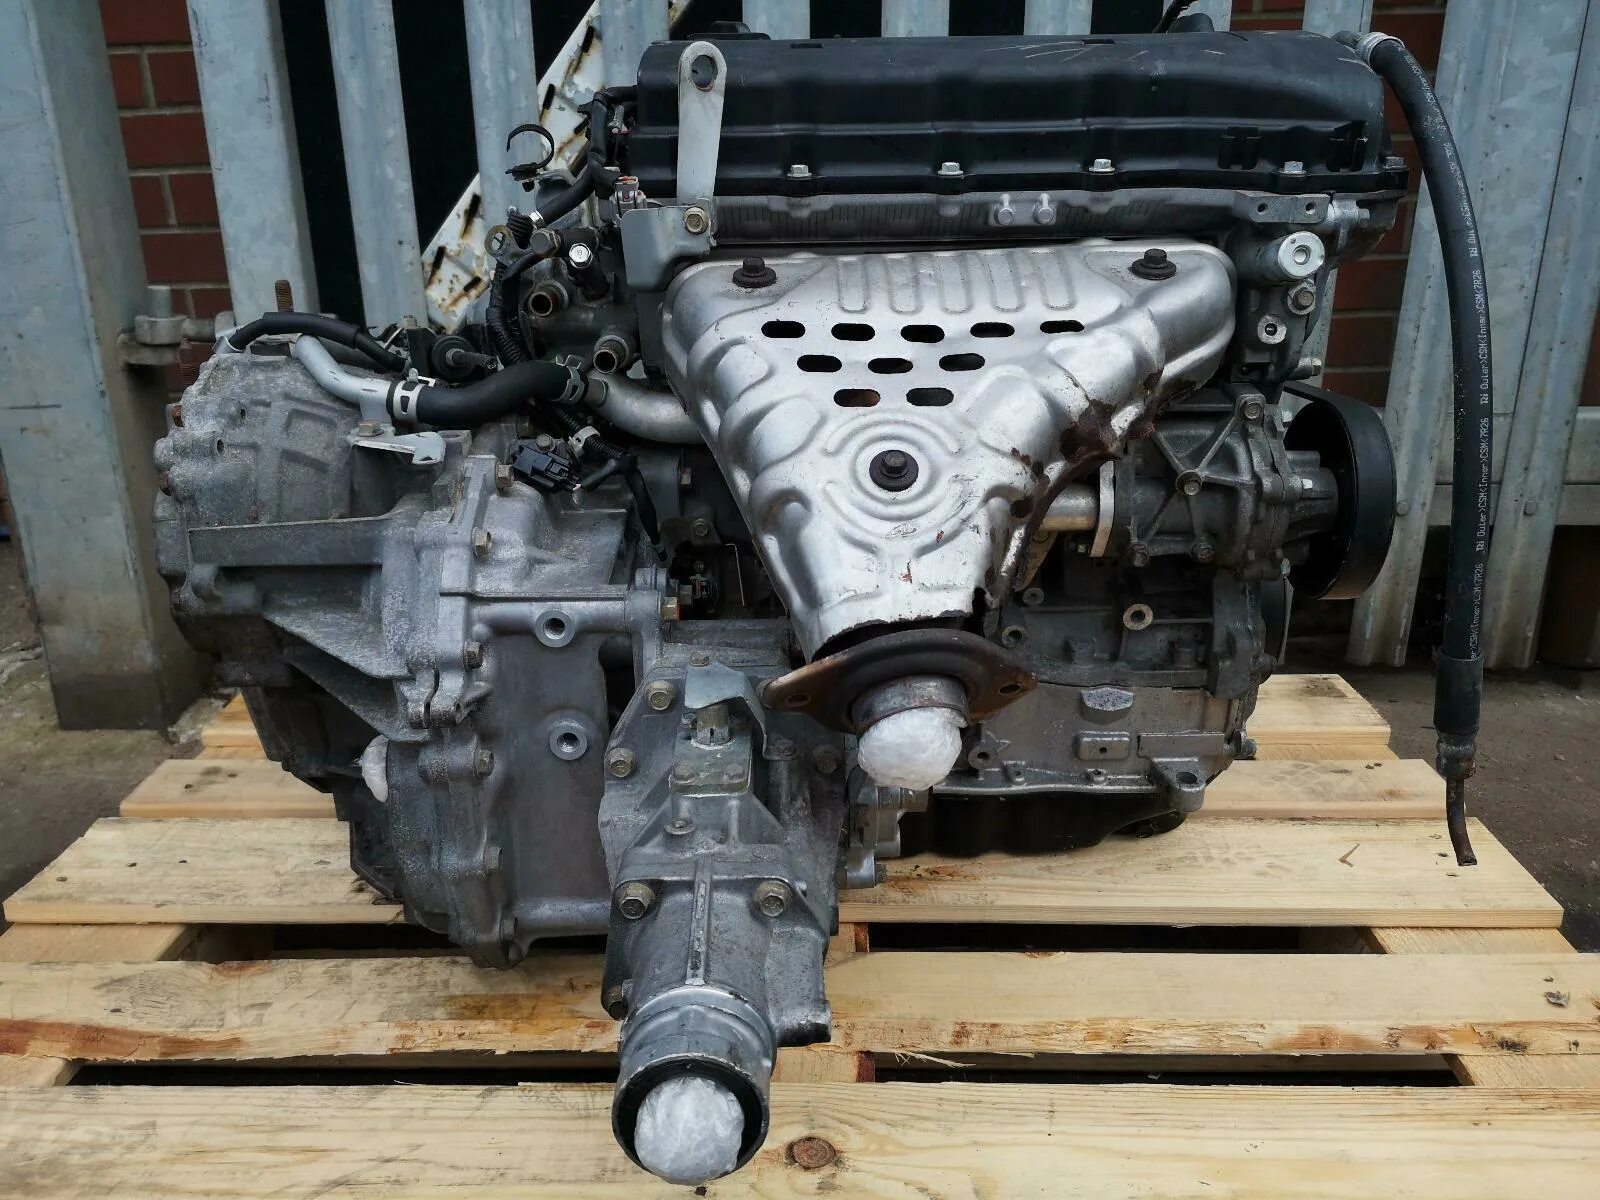 Мотор Аутлендер 2.4. 4 B12 двигатель Митсубиси. 4b12 мотор Outlander. Двигатель Митсубиси Аутлендер 2.4. Мицубиси аутлендер двигатель 2